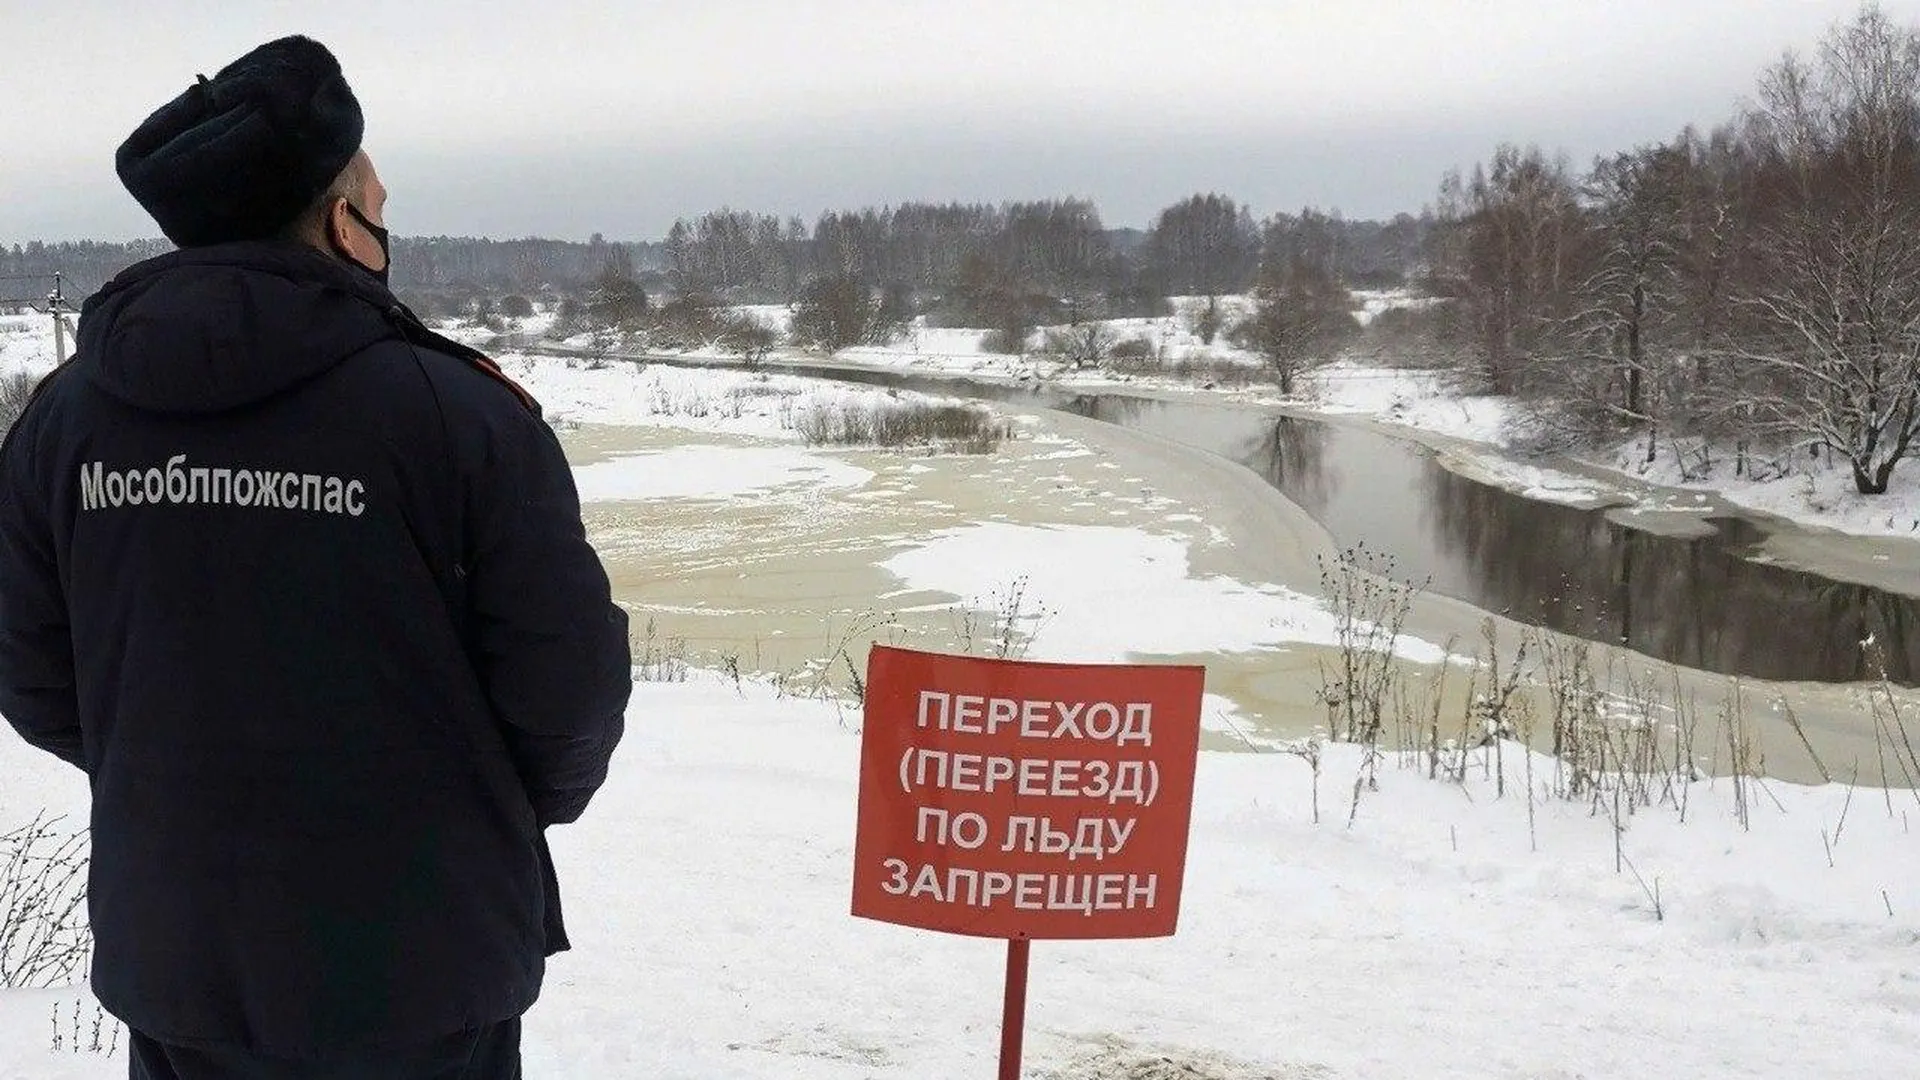 Спасатели «Мособлпожспаса» рассказали рыбакам об опасности выхода на хрупкий лед